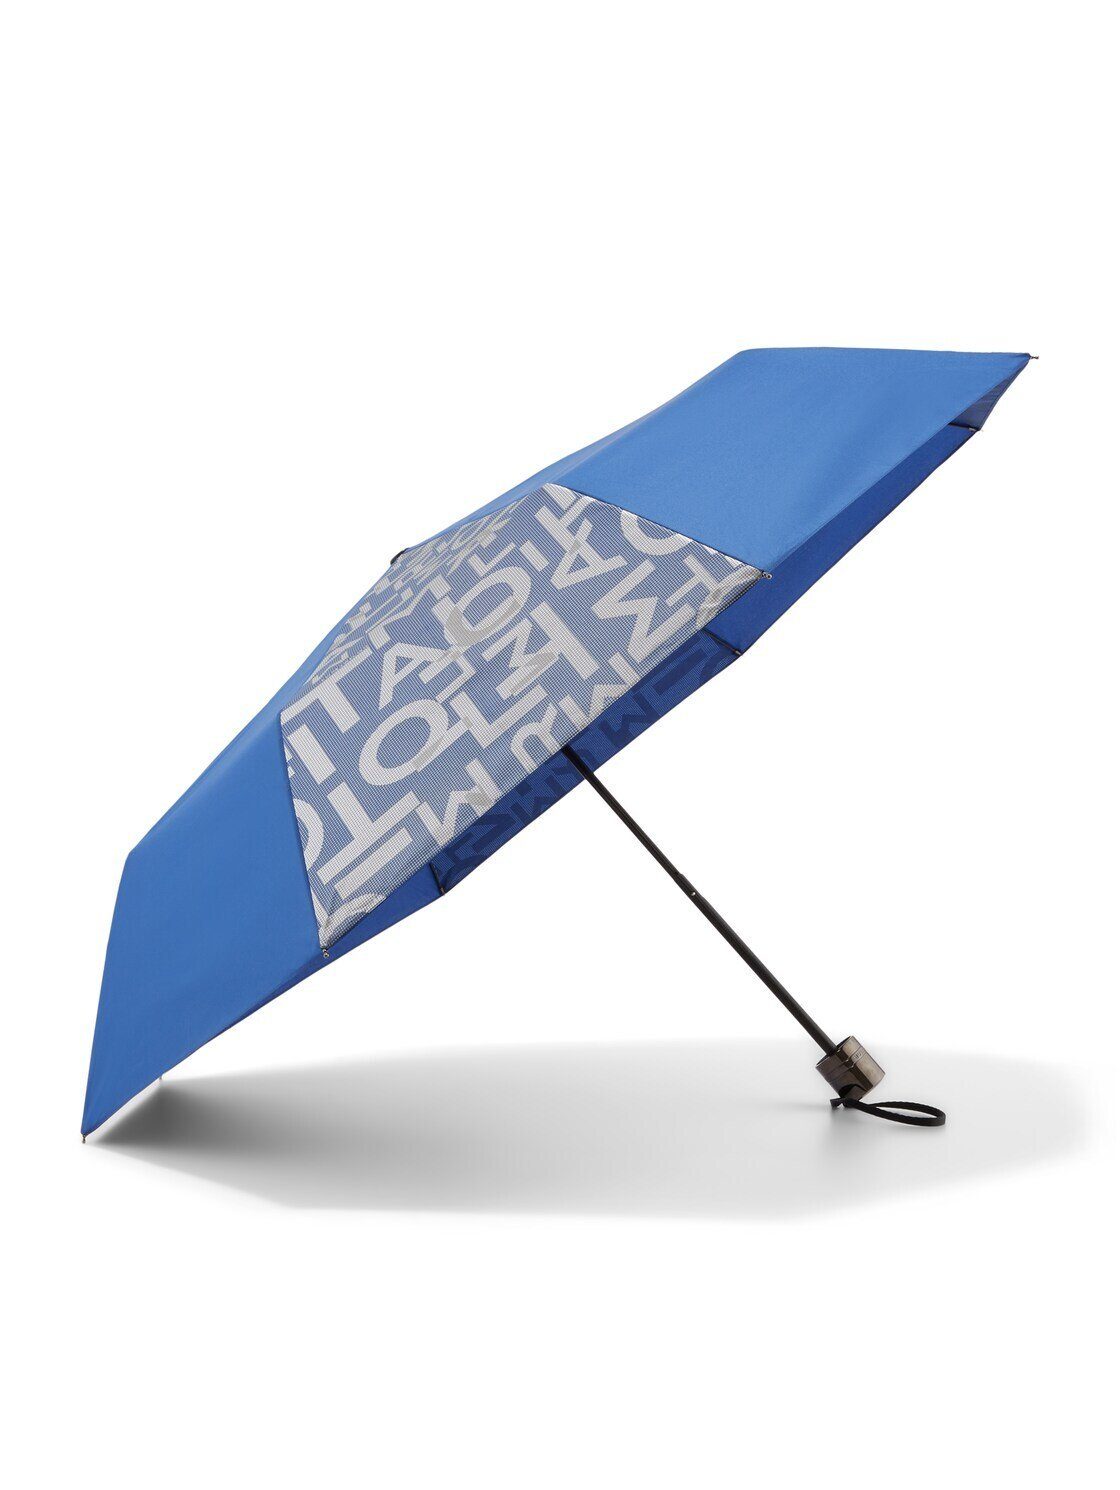 Taschenregenschirm Regenschirm TAILOR mit BLUE TRUE TOM Textprint Basic